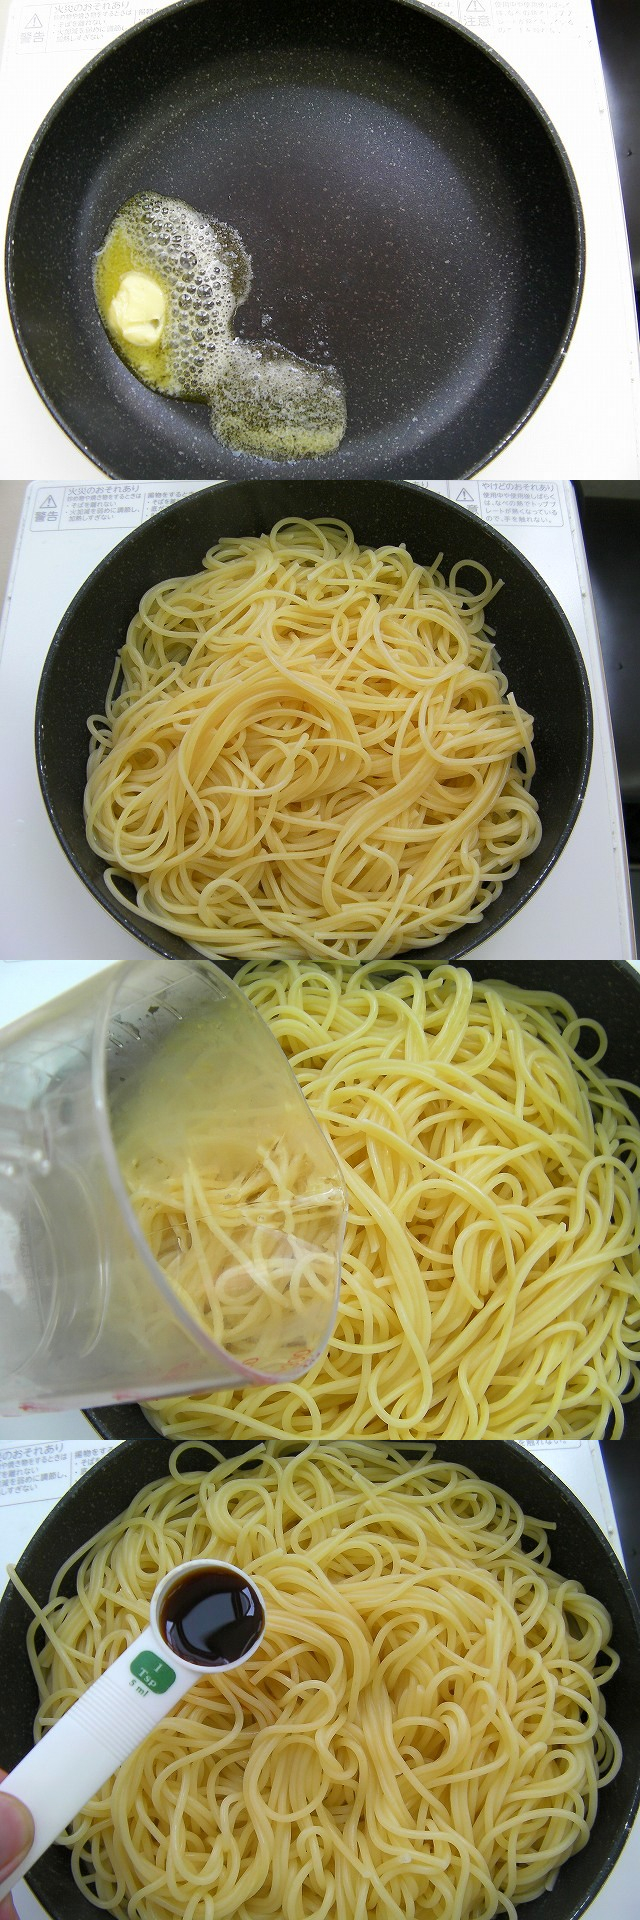 Avocado and the natto spaghetti recipe (5)new4